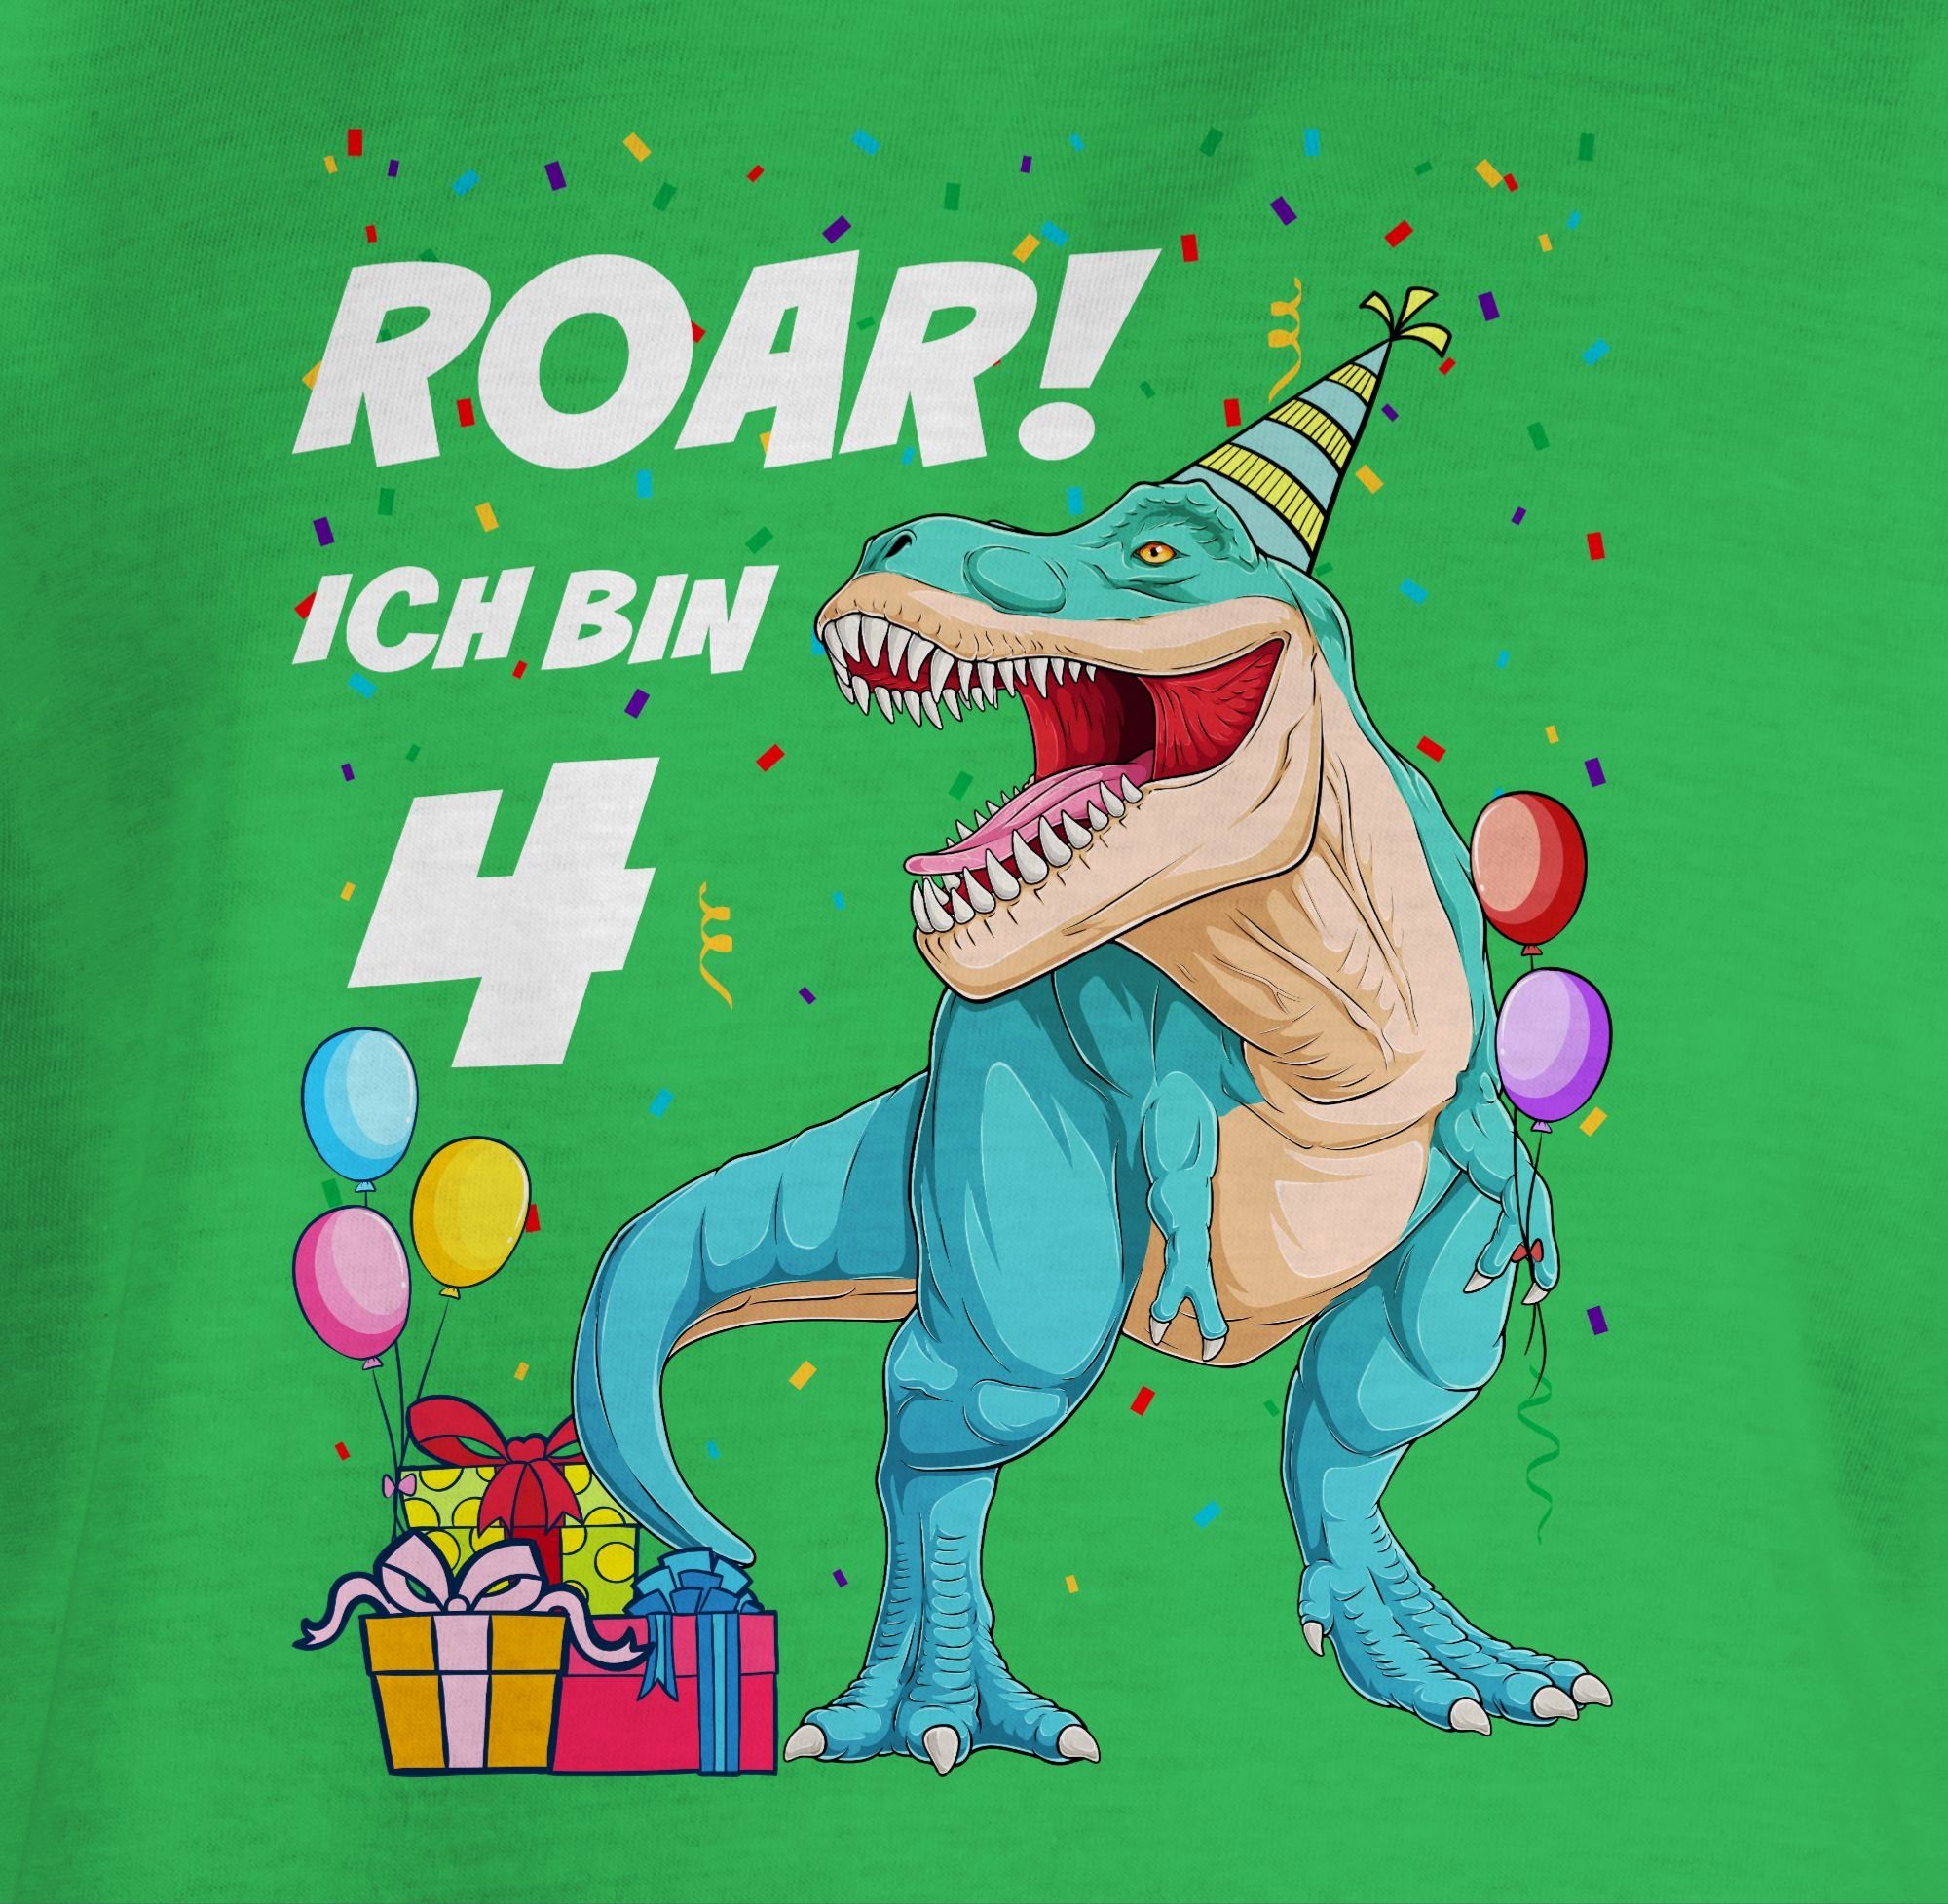 Shirtracer T-Shirt Ich bin 4. 4 Dinosaurier Grün Jahre T-Rex Dino 3 Geburtstag 